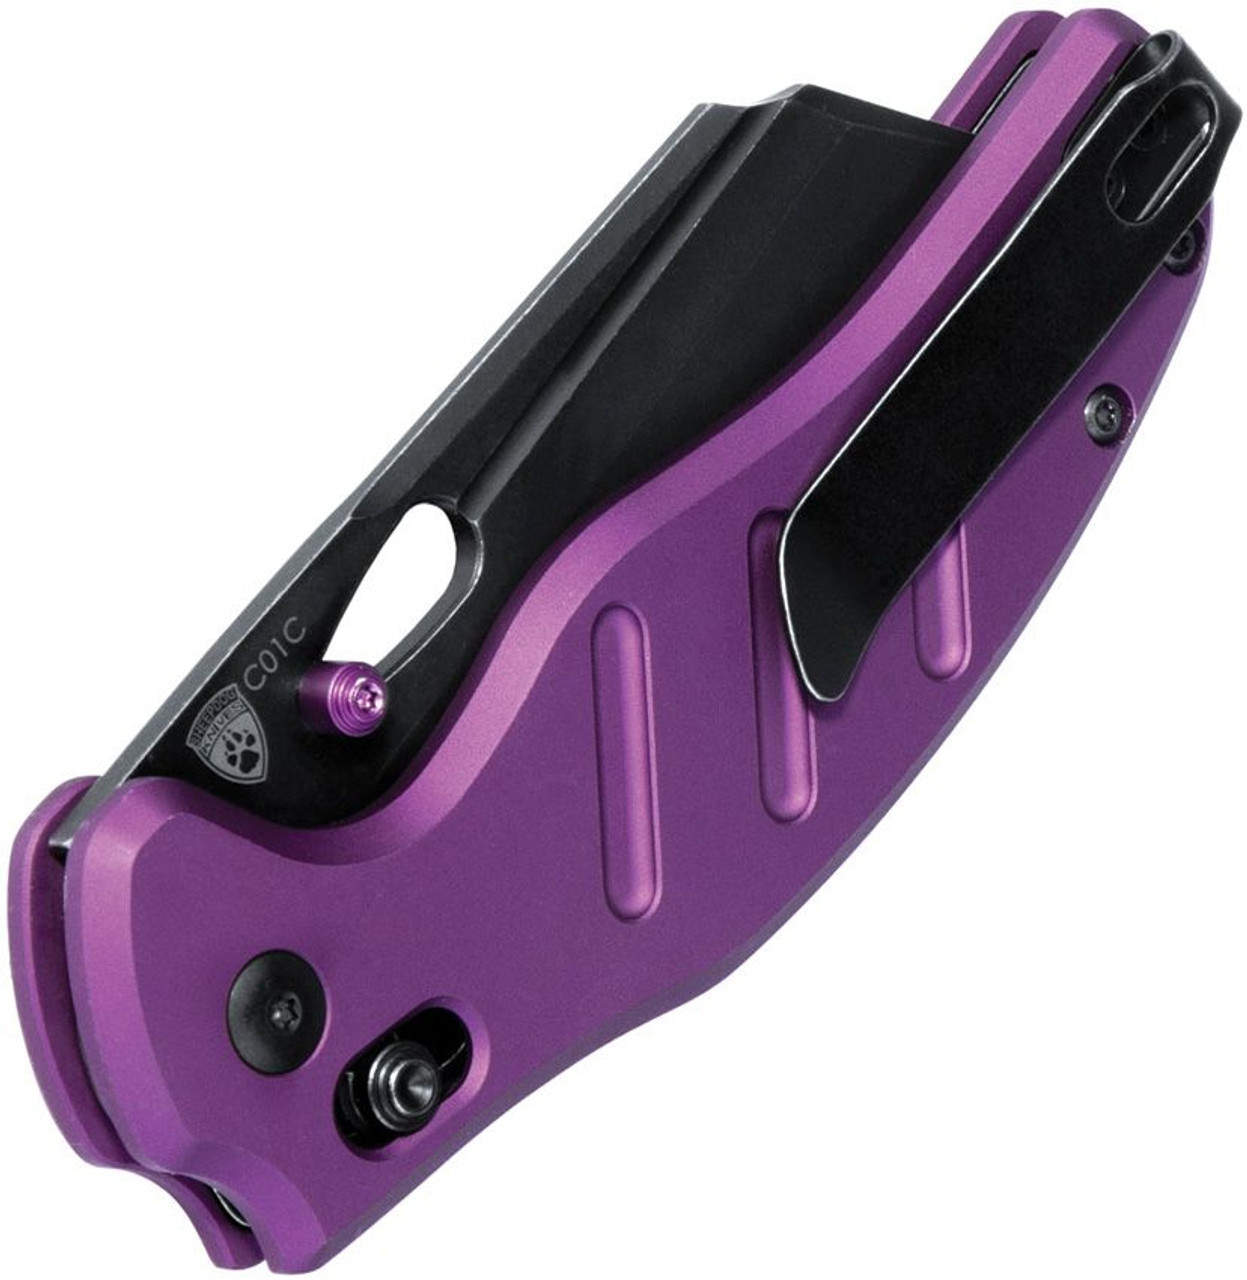 Kizer C01C Sheepdog EDC Knife Purple Aluminium Handle Pocket Knife, 3.15  Inches 154CM Steel Blade Folding Knife, V4488AC1 - Yahoo Shopping